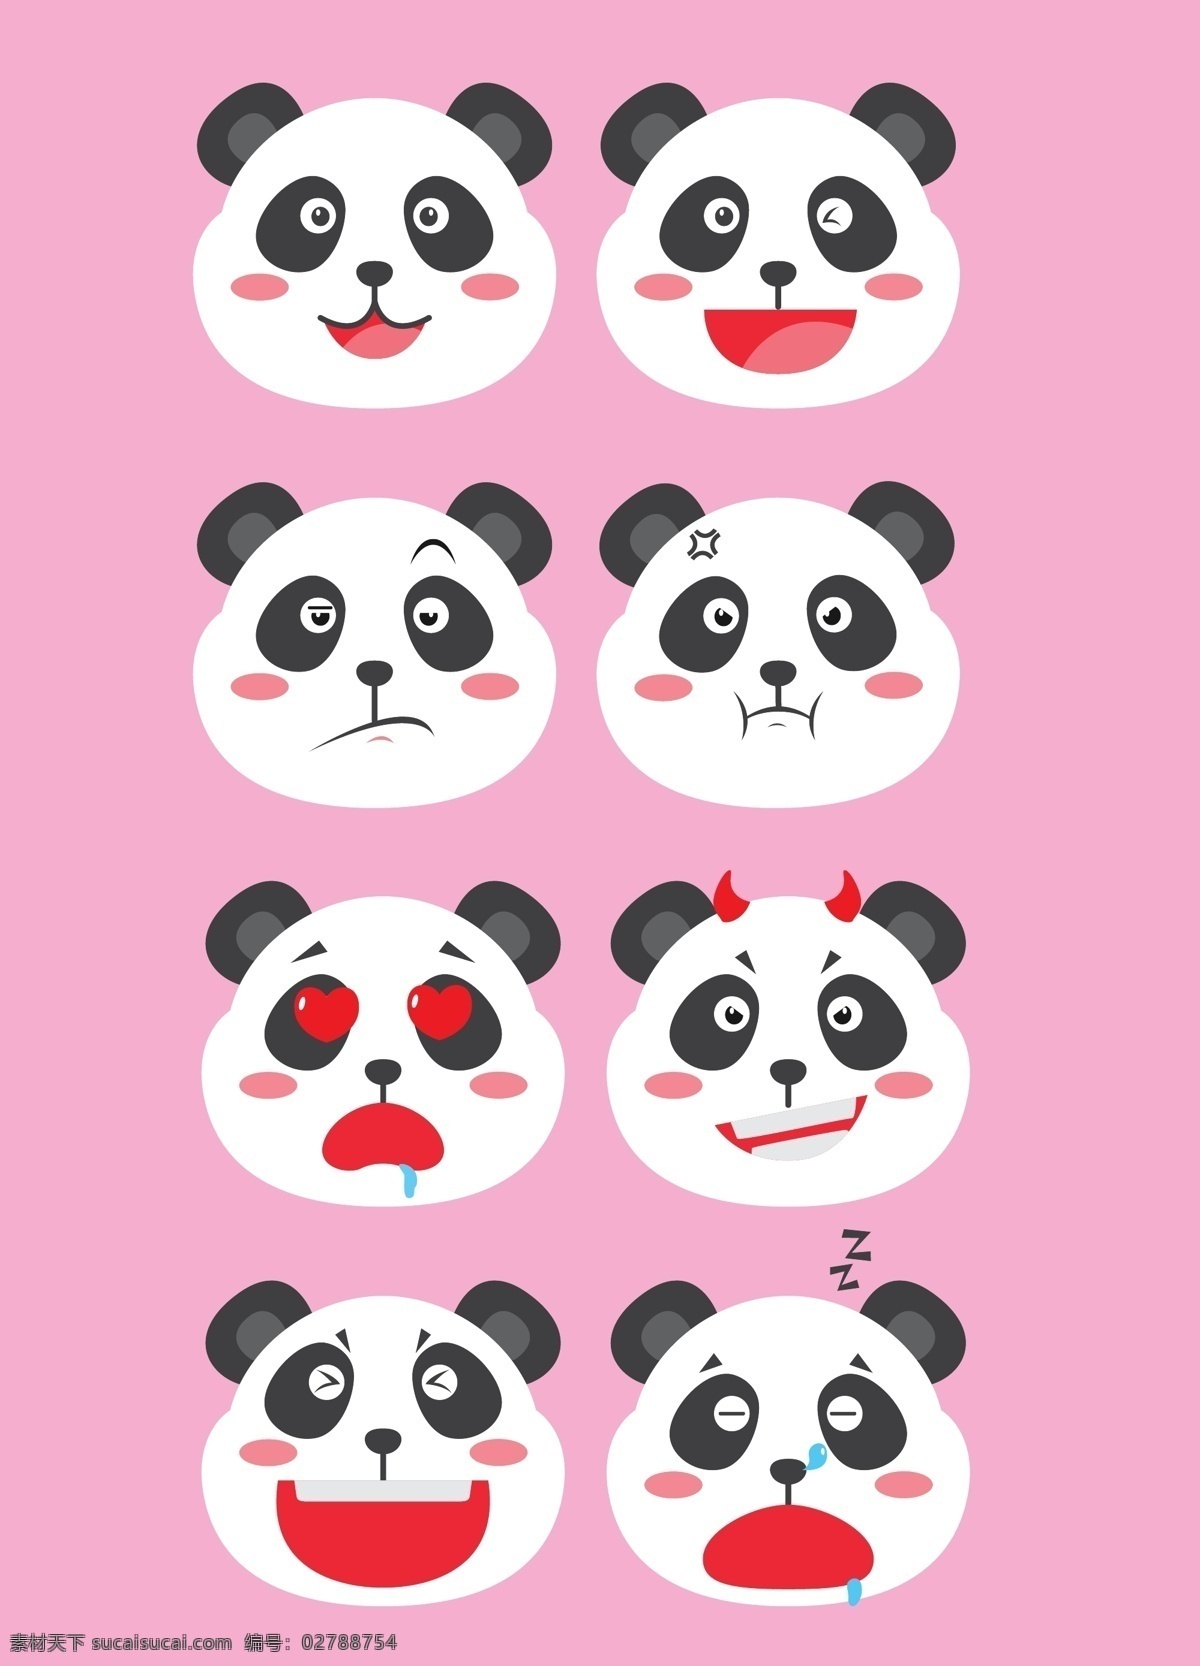 矢量 卡通 熊猫 装饰 元素 表情 包 图案 集合 矢量熊猫 卡通熊猫 熊猫元素 熊猫装饰 熊猫图案 可爱熊猫 扁平化 彩色 表情包